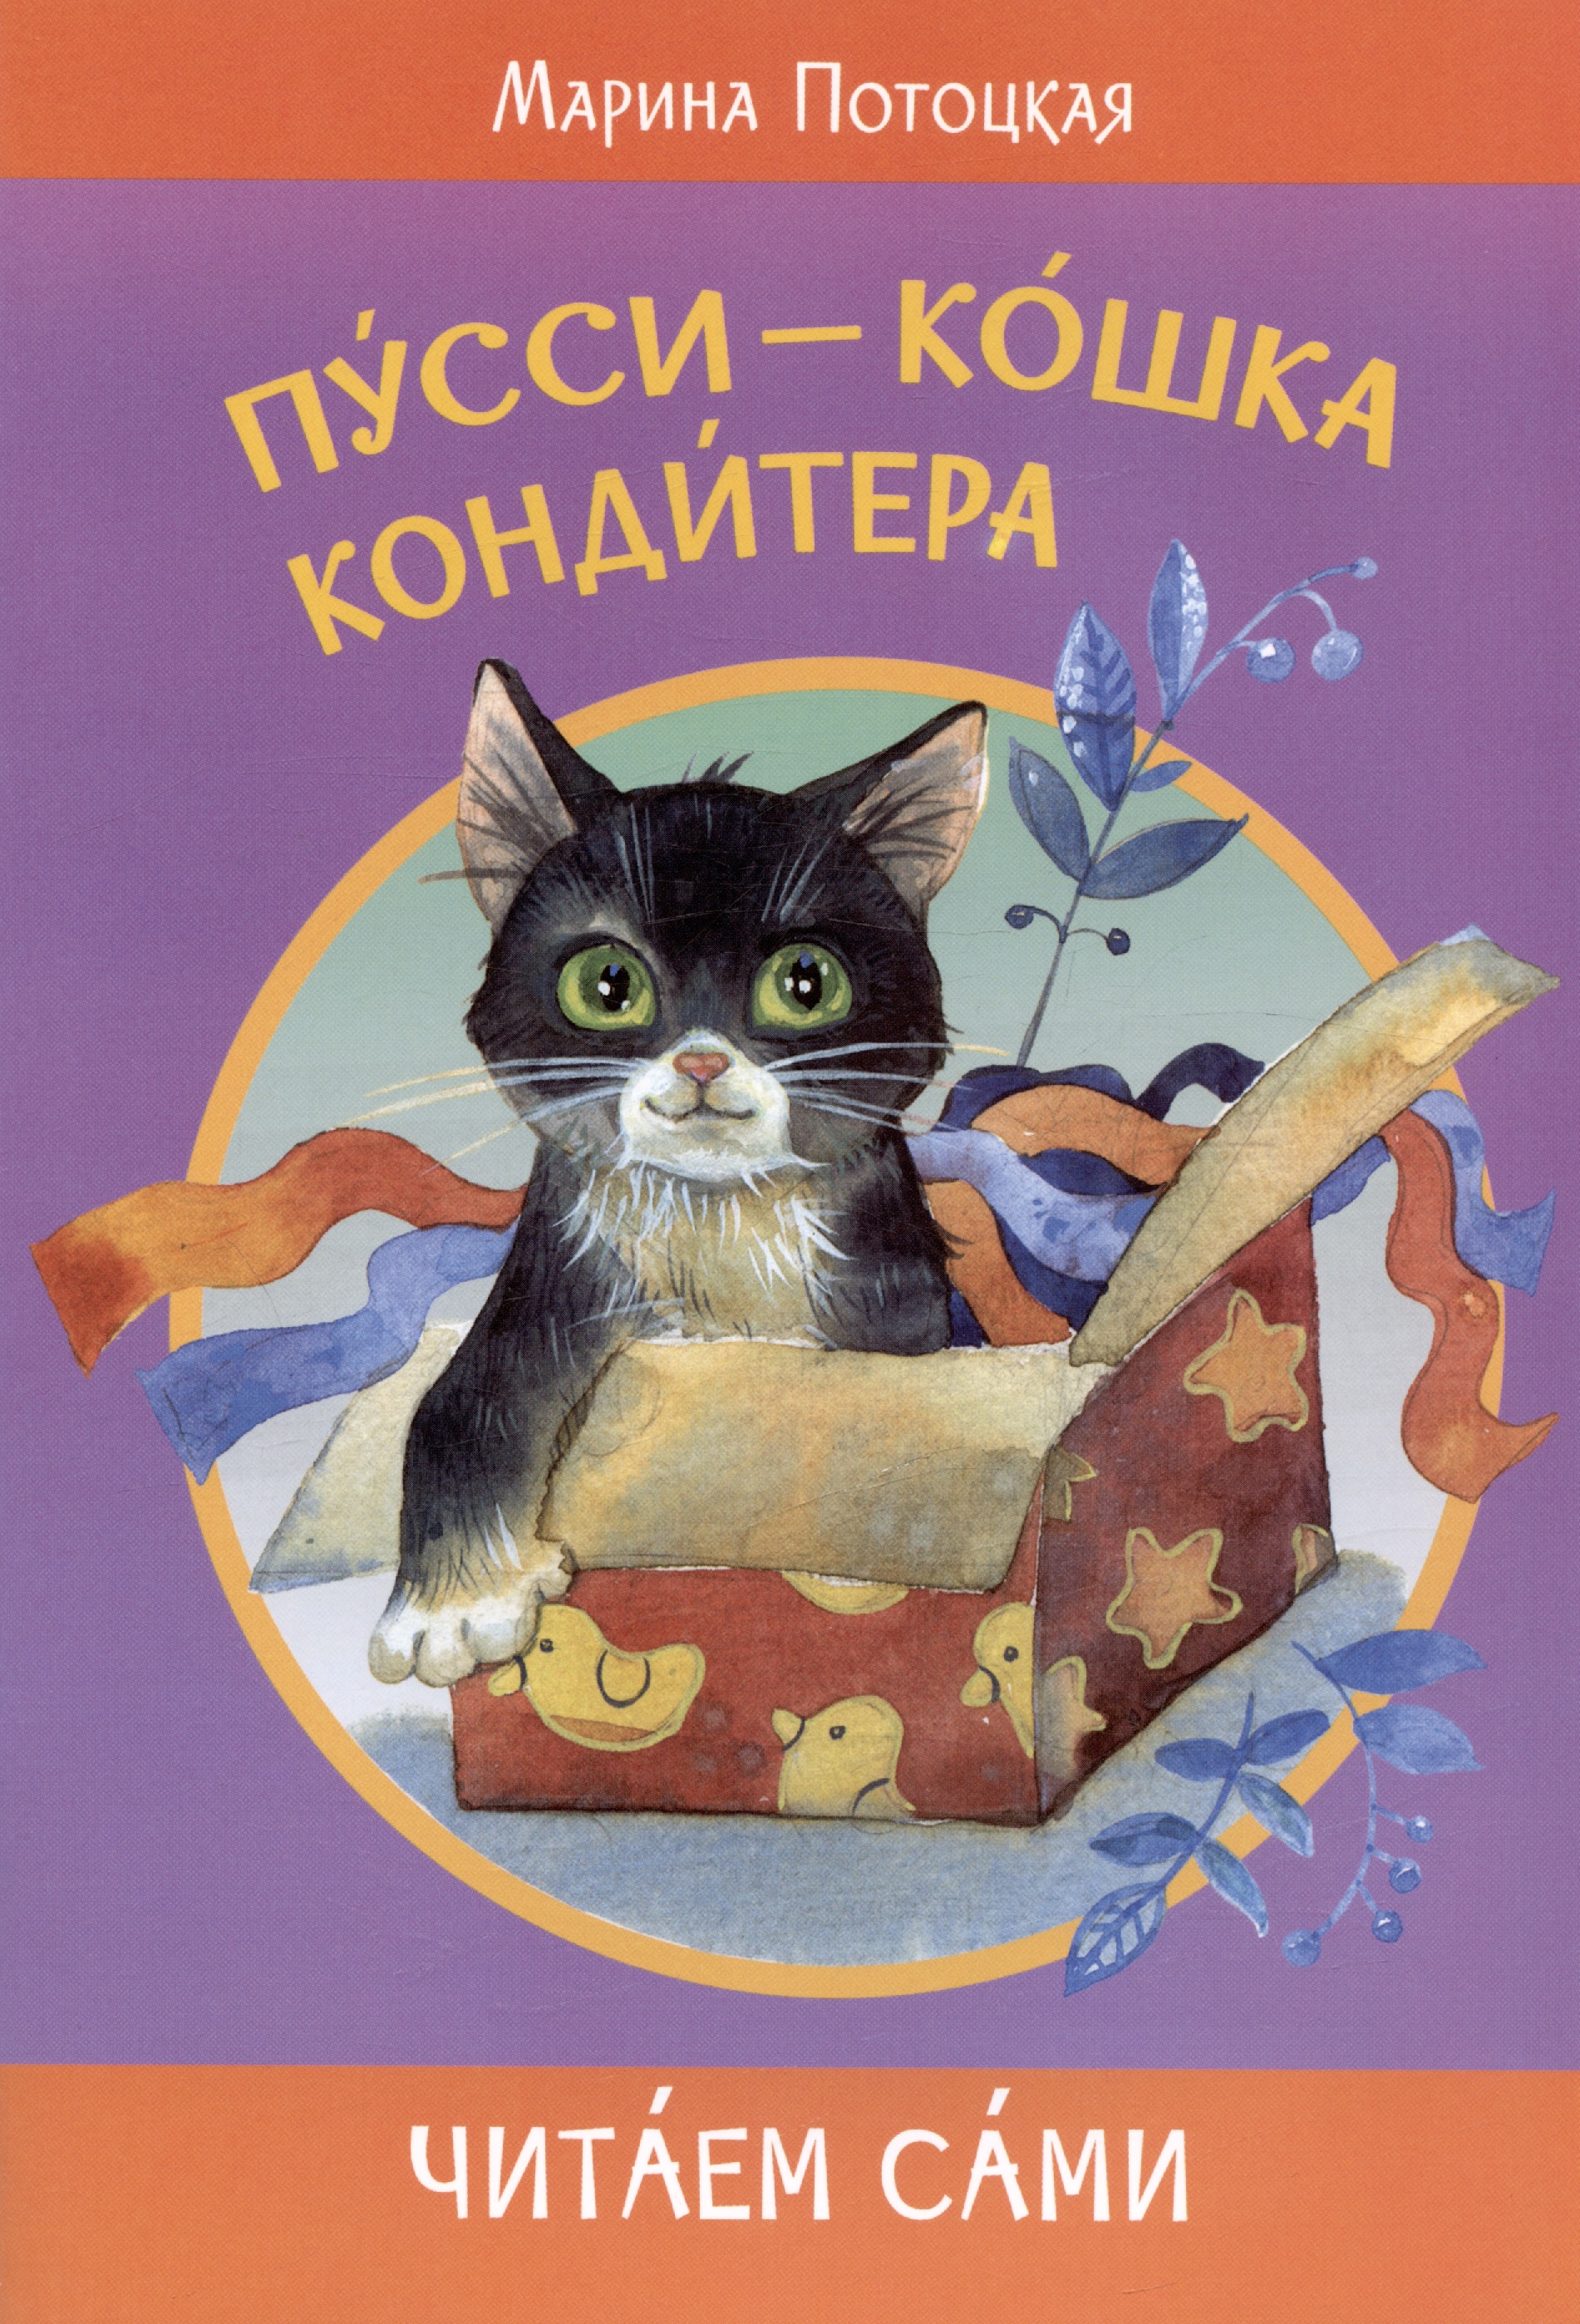 Потоцкая Марина Марковна Пусси-кошка кондитера цена и фото